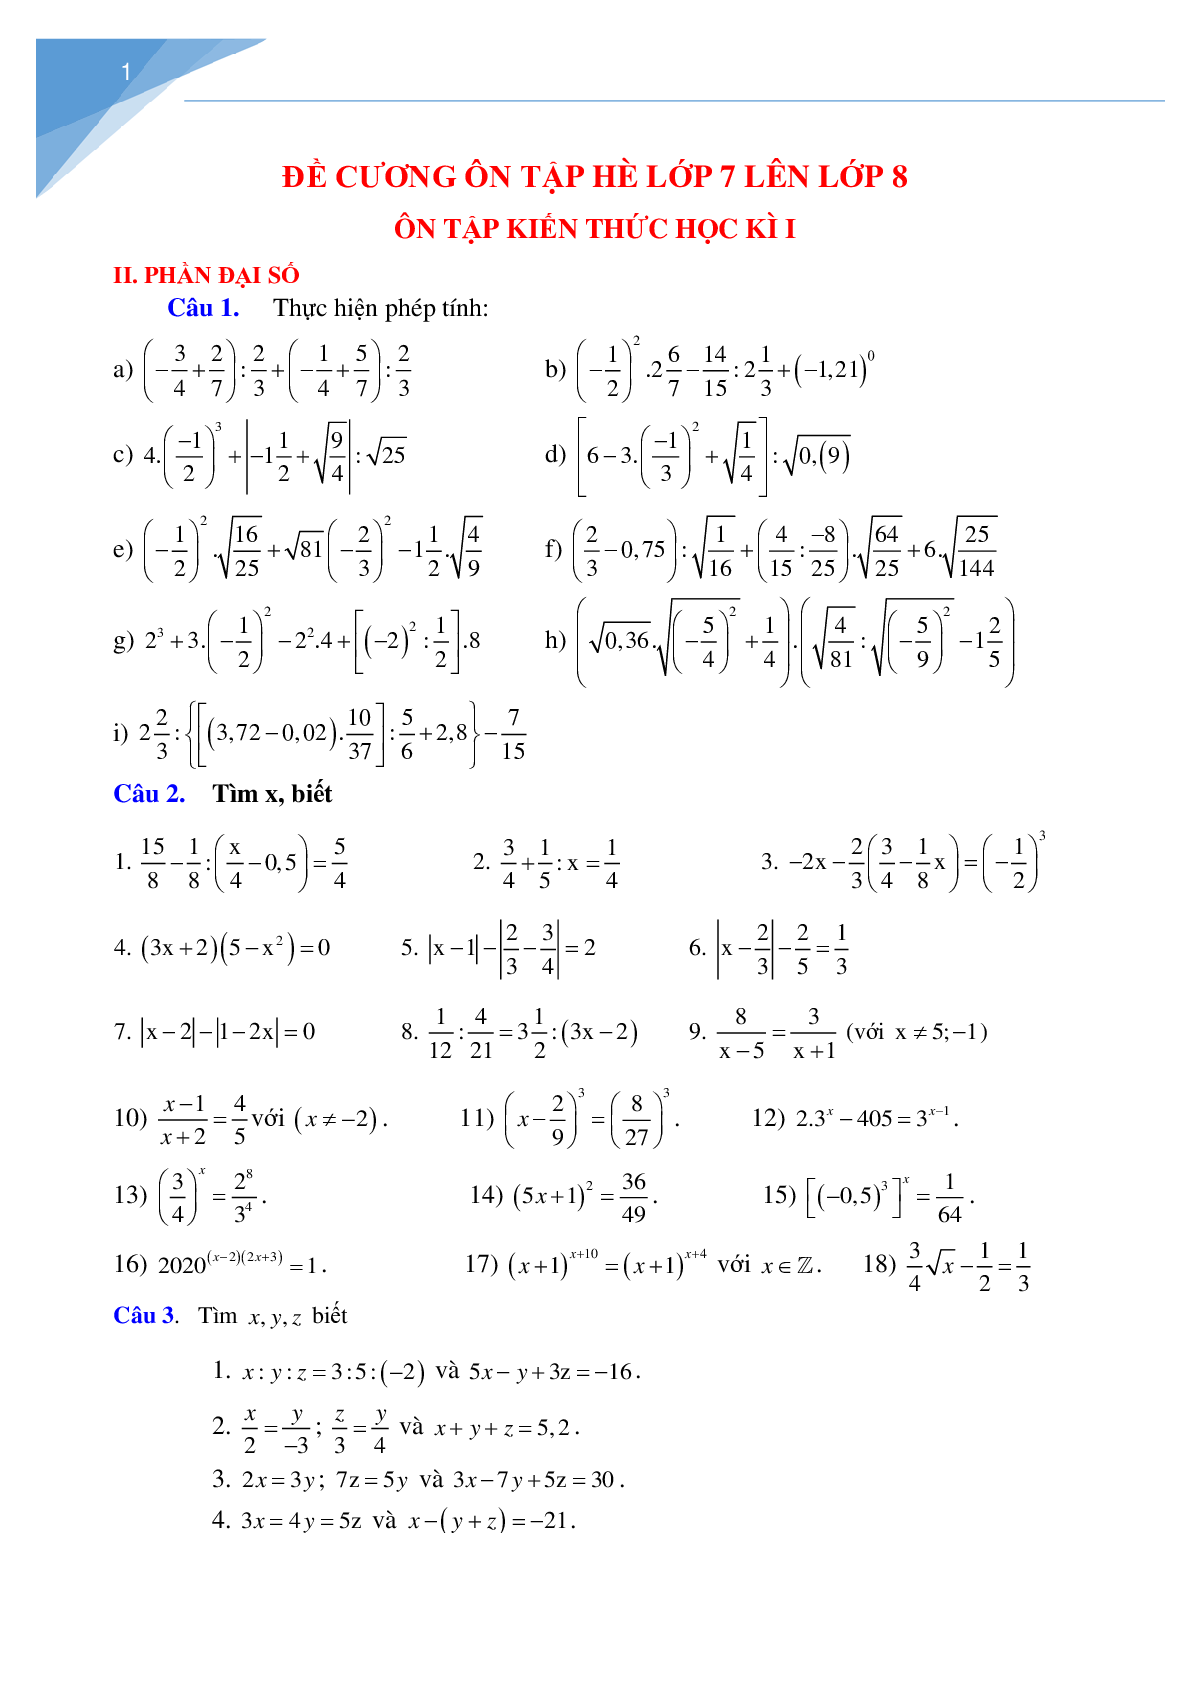 Tài liệu ôn tập hè môn toán lớp 7 lên lớp 8 (trang 1)